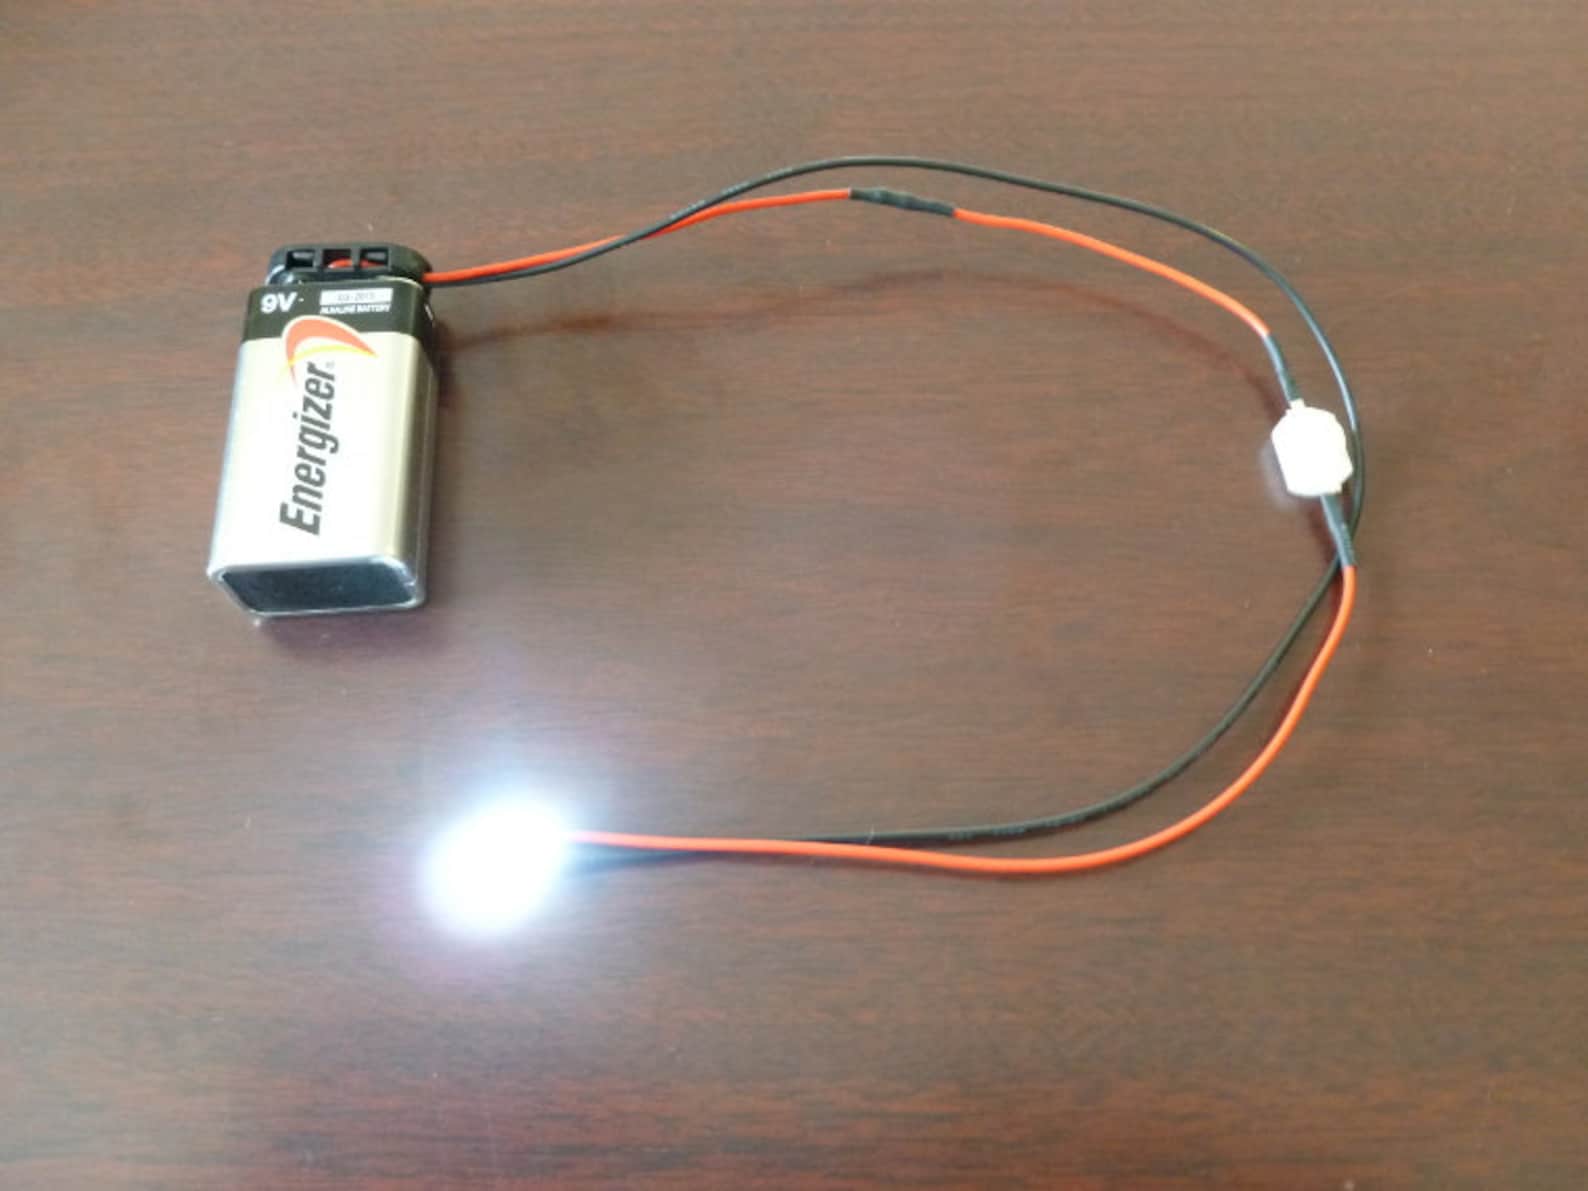 Battery light